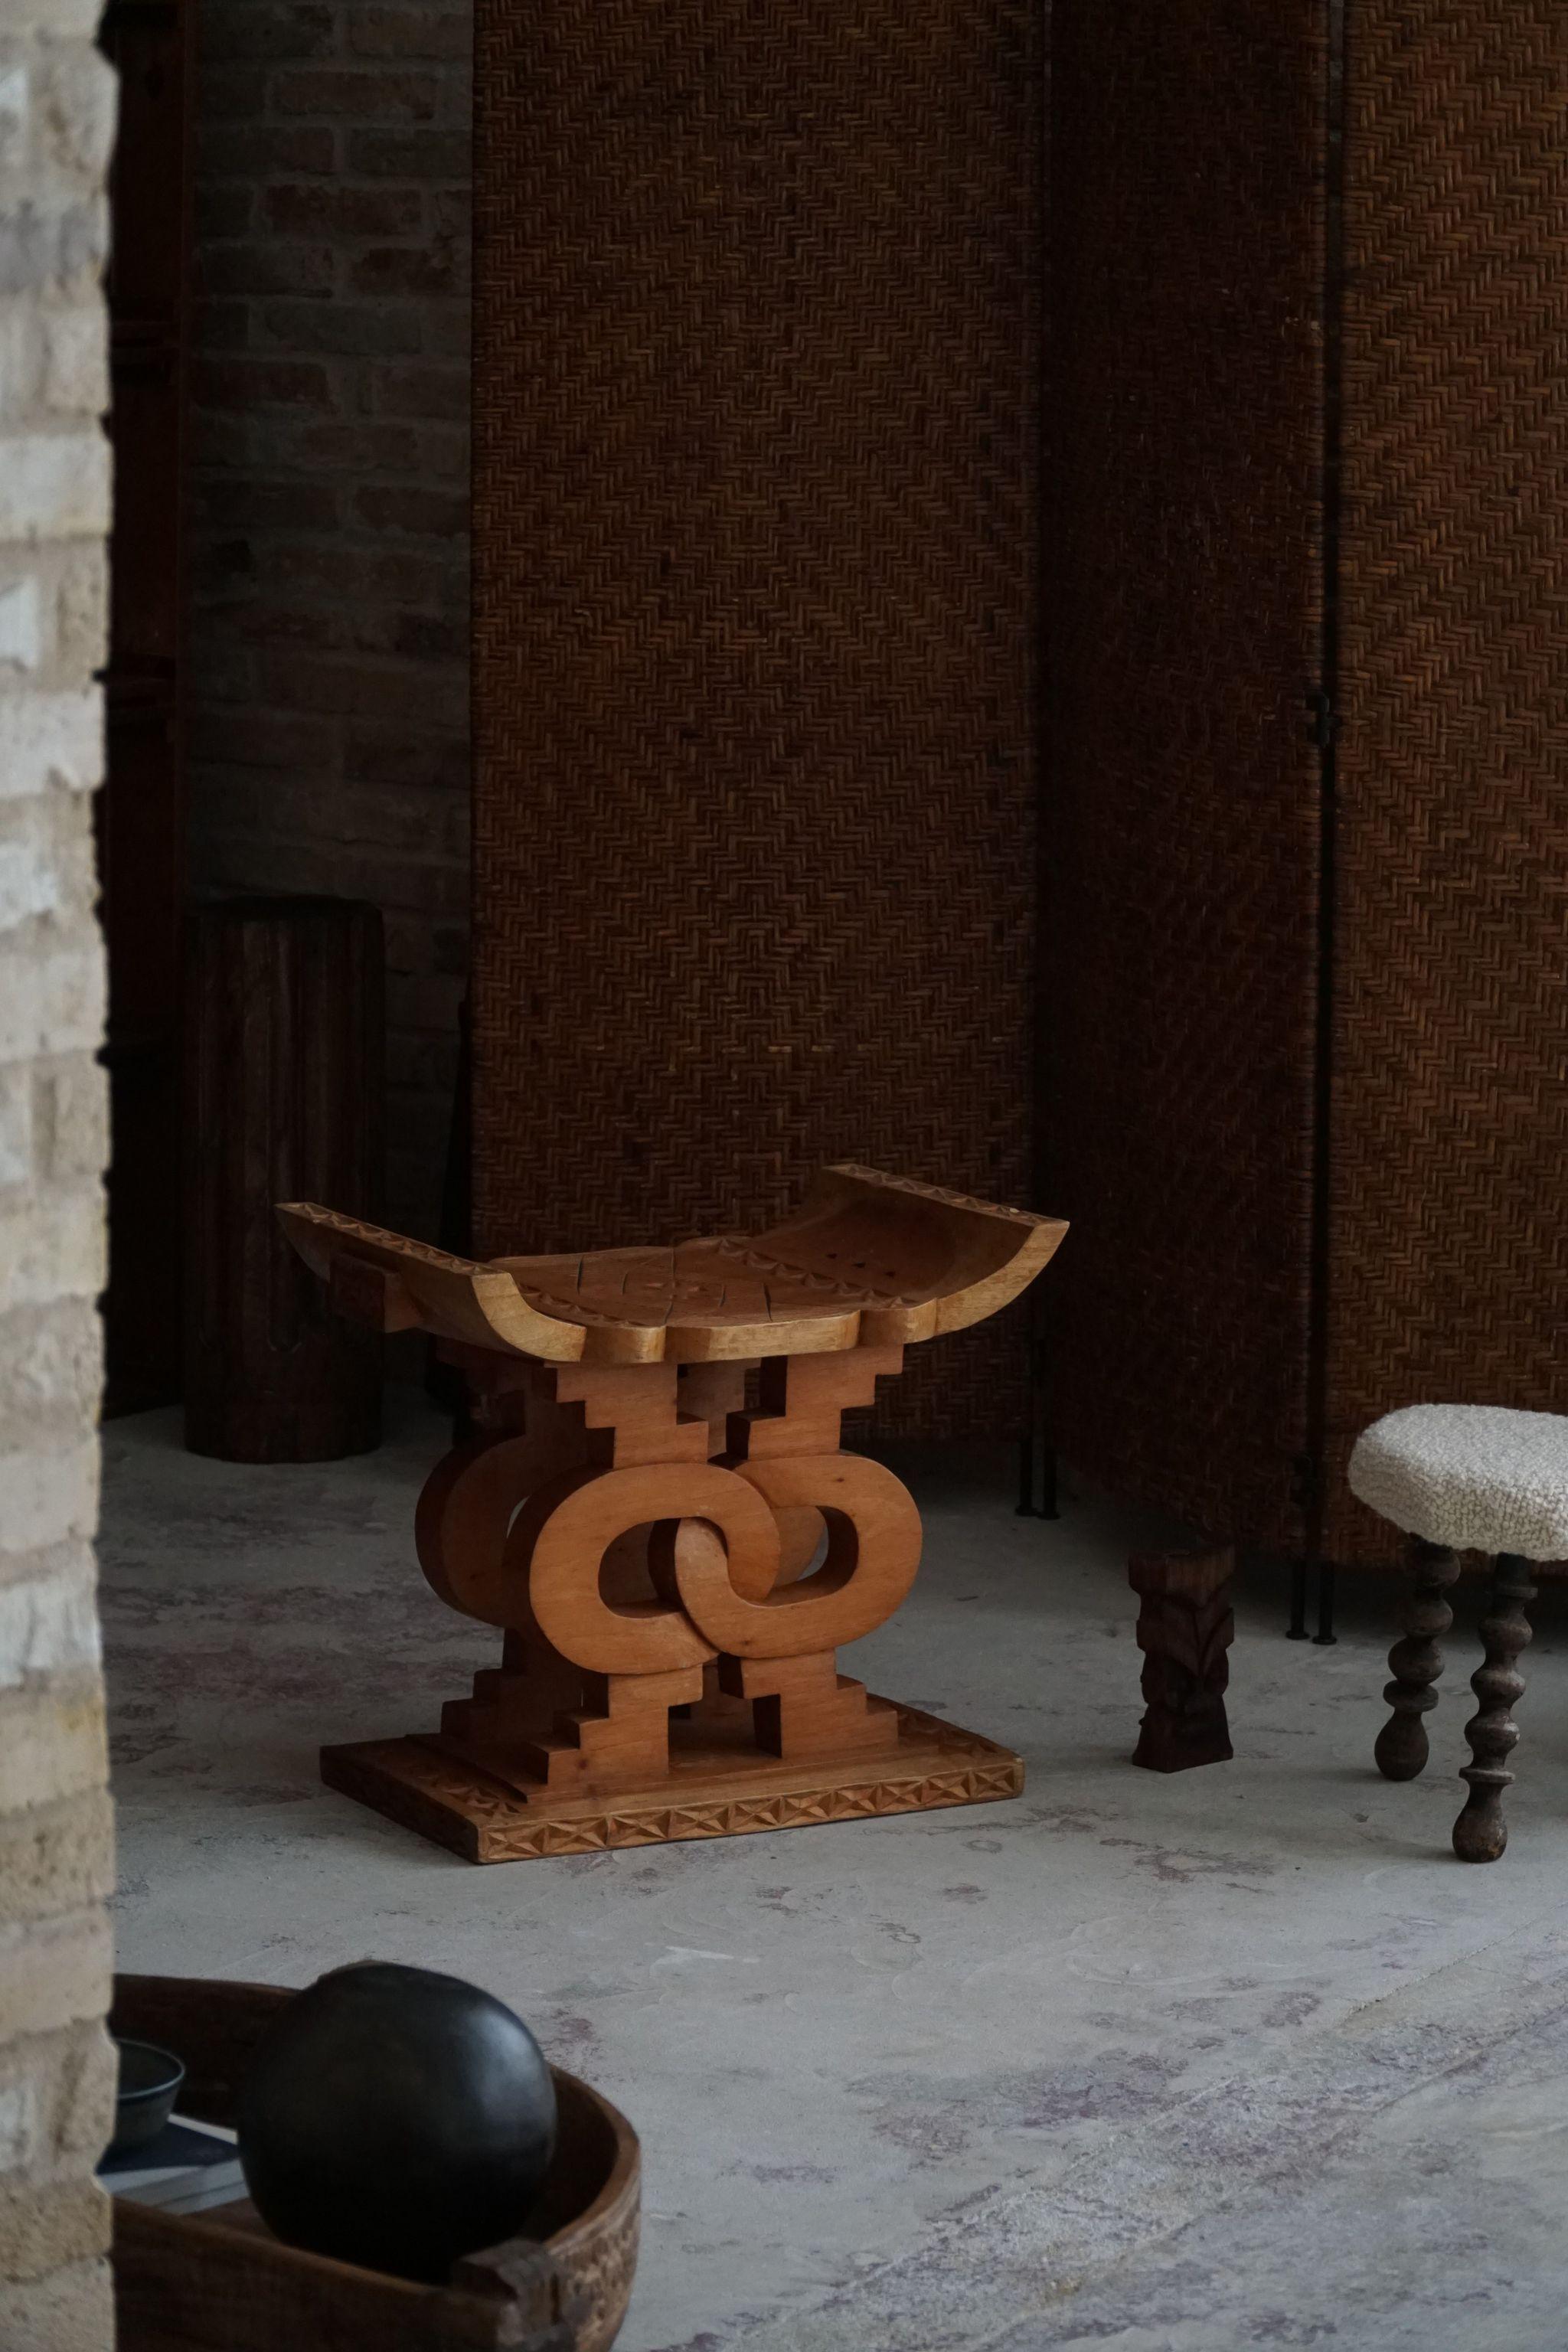 Tabouret Ashanti très décoratif, fabriqué à la main en Afrique de l'Ouest (Ghana) dans les années 1970. Un design unique qui en fait une pièce unique pour votre intérieur.

Un bel objet wabi sabi avec une belle patine. Parfait comme table d'appoint